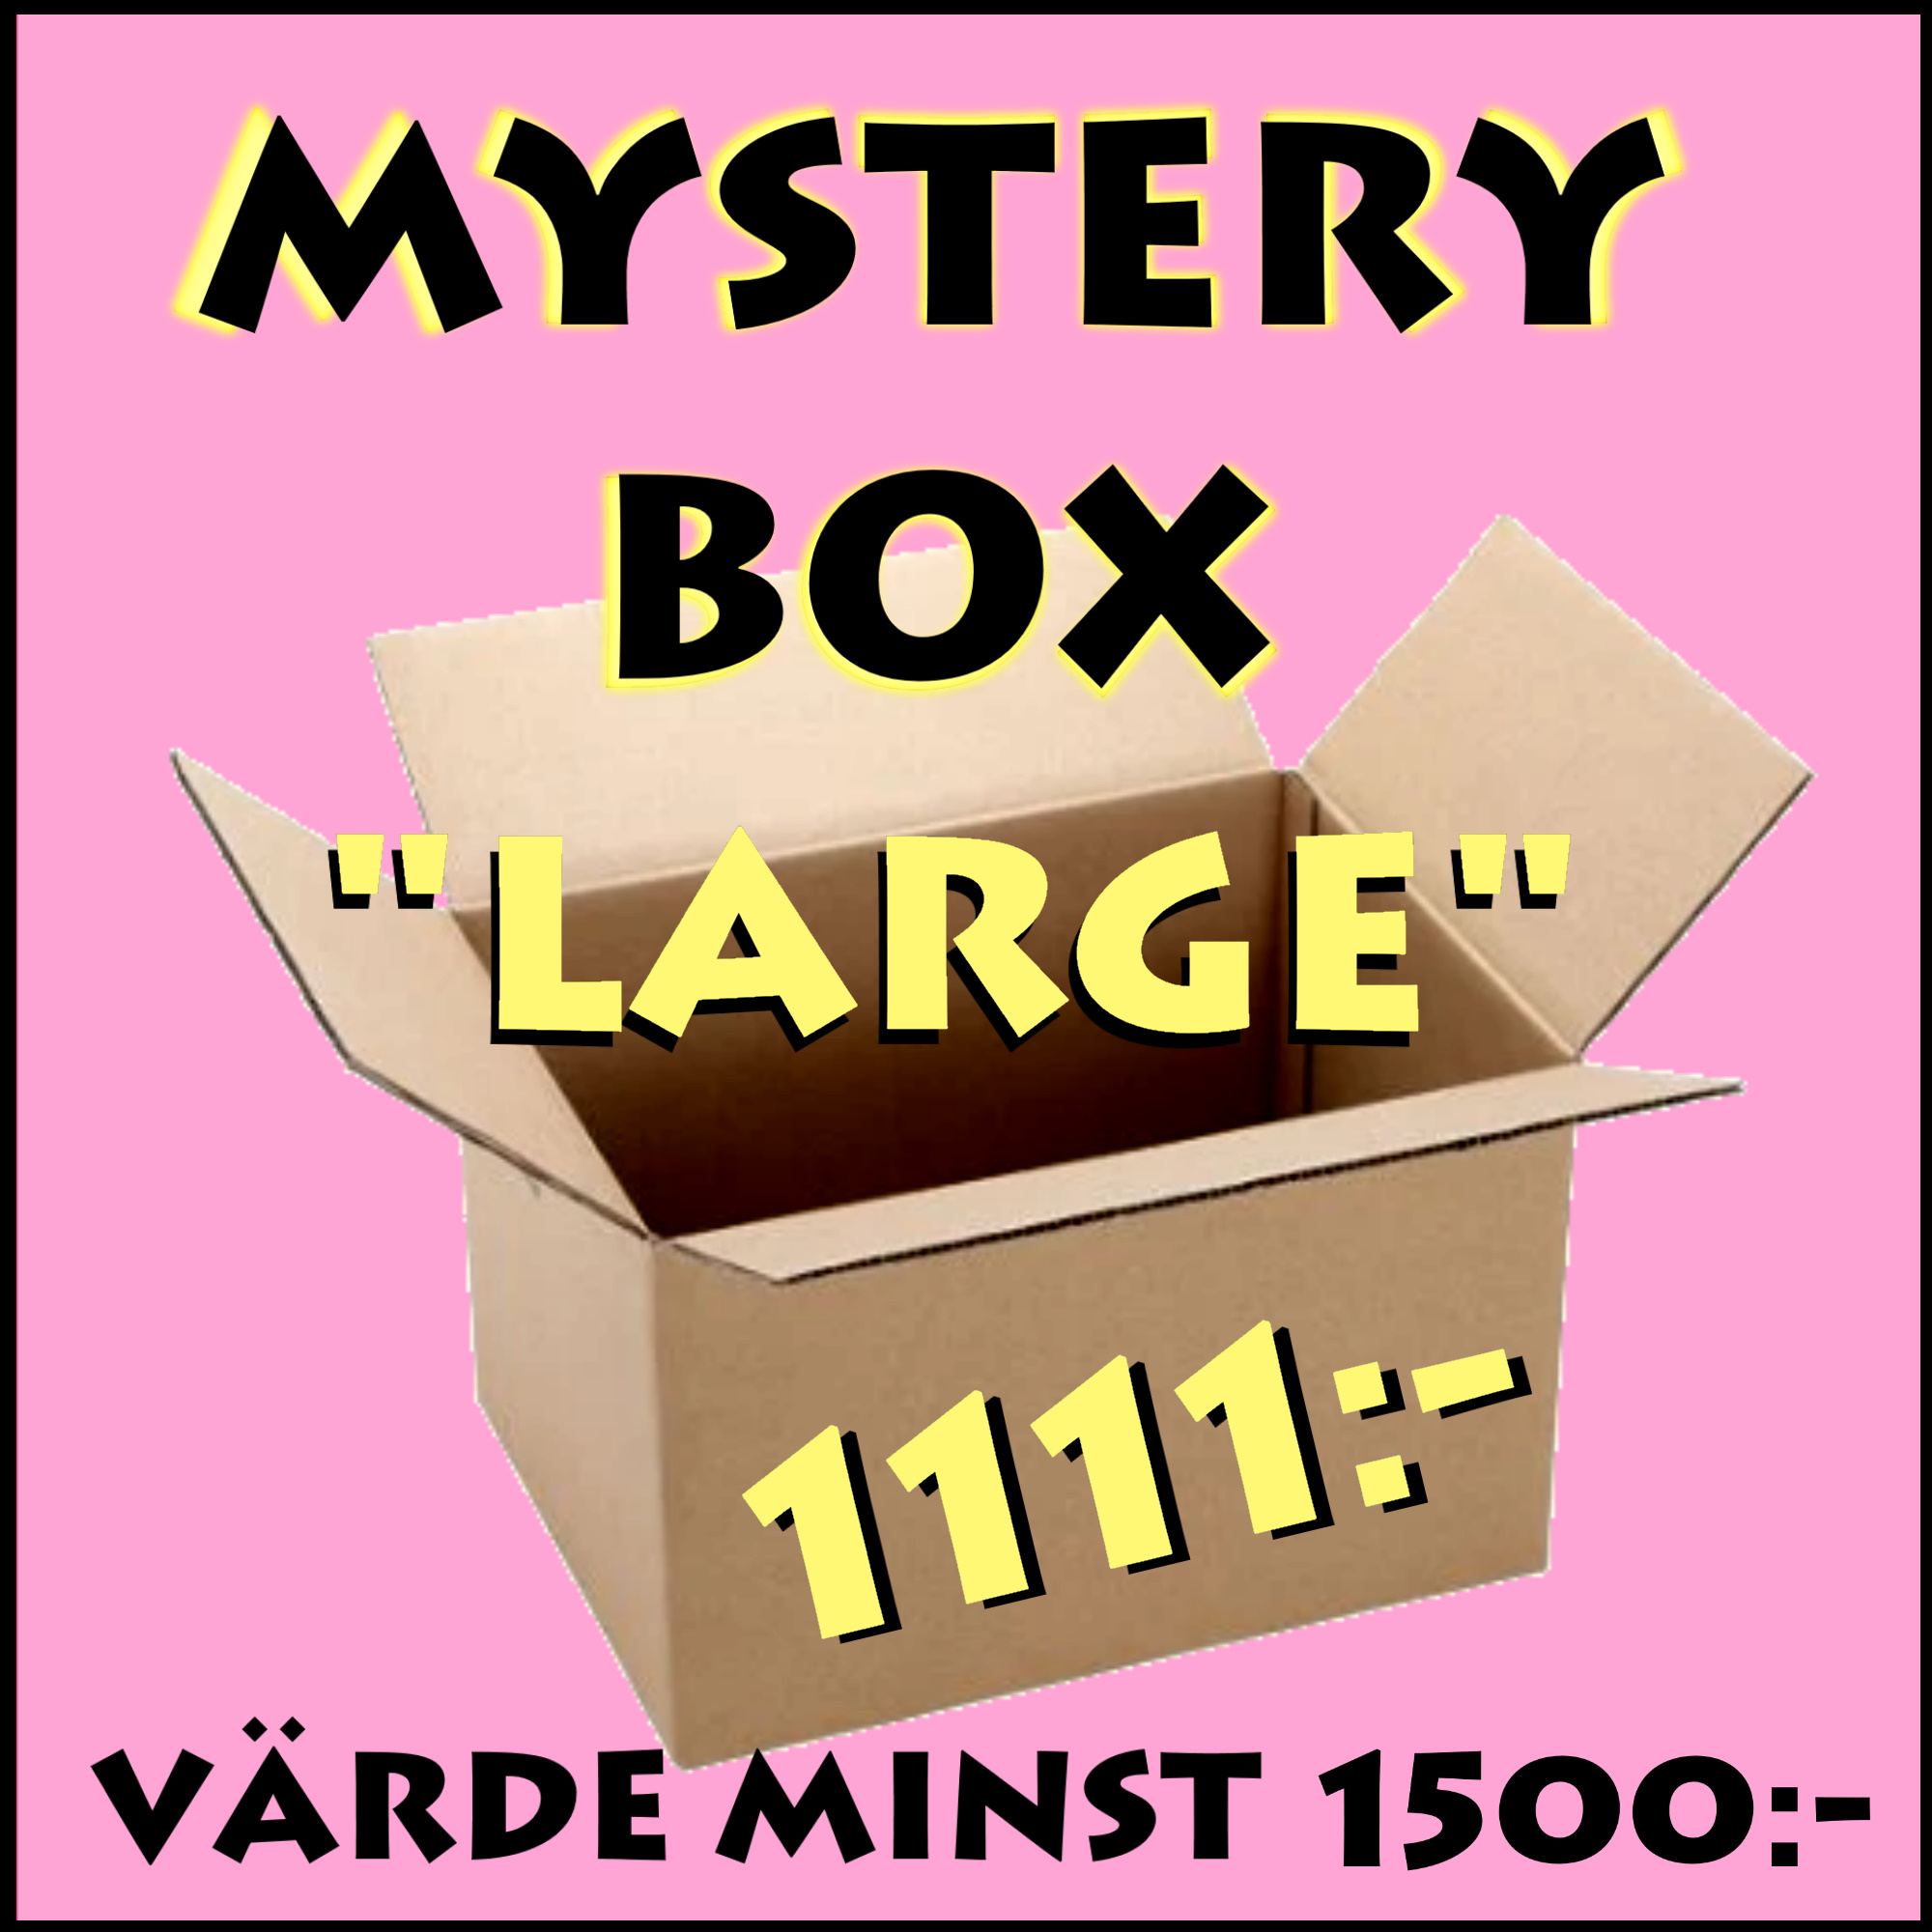 Mystery Box "Large" - Värde minst 1500:-